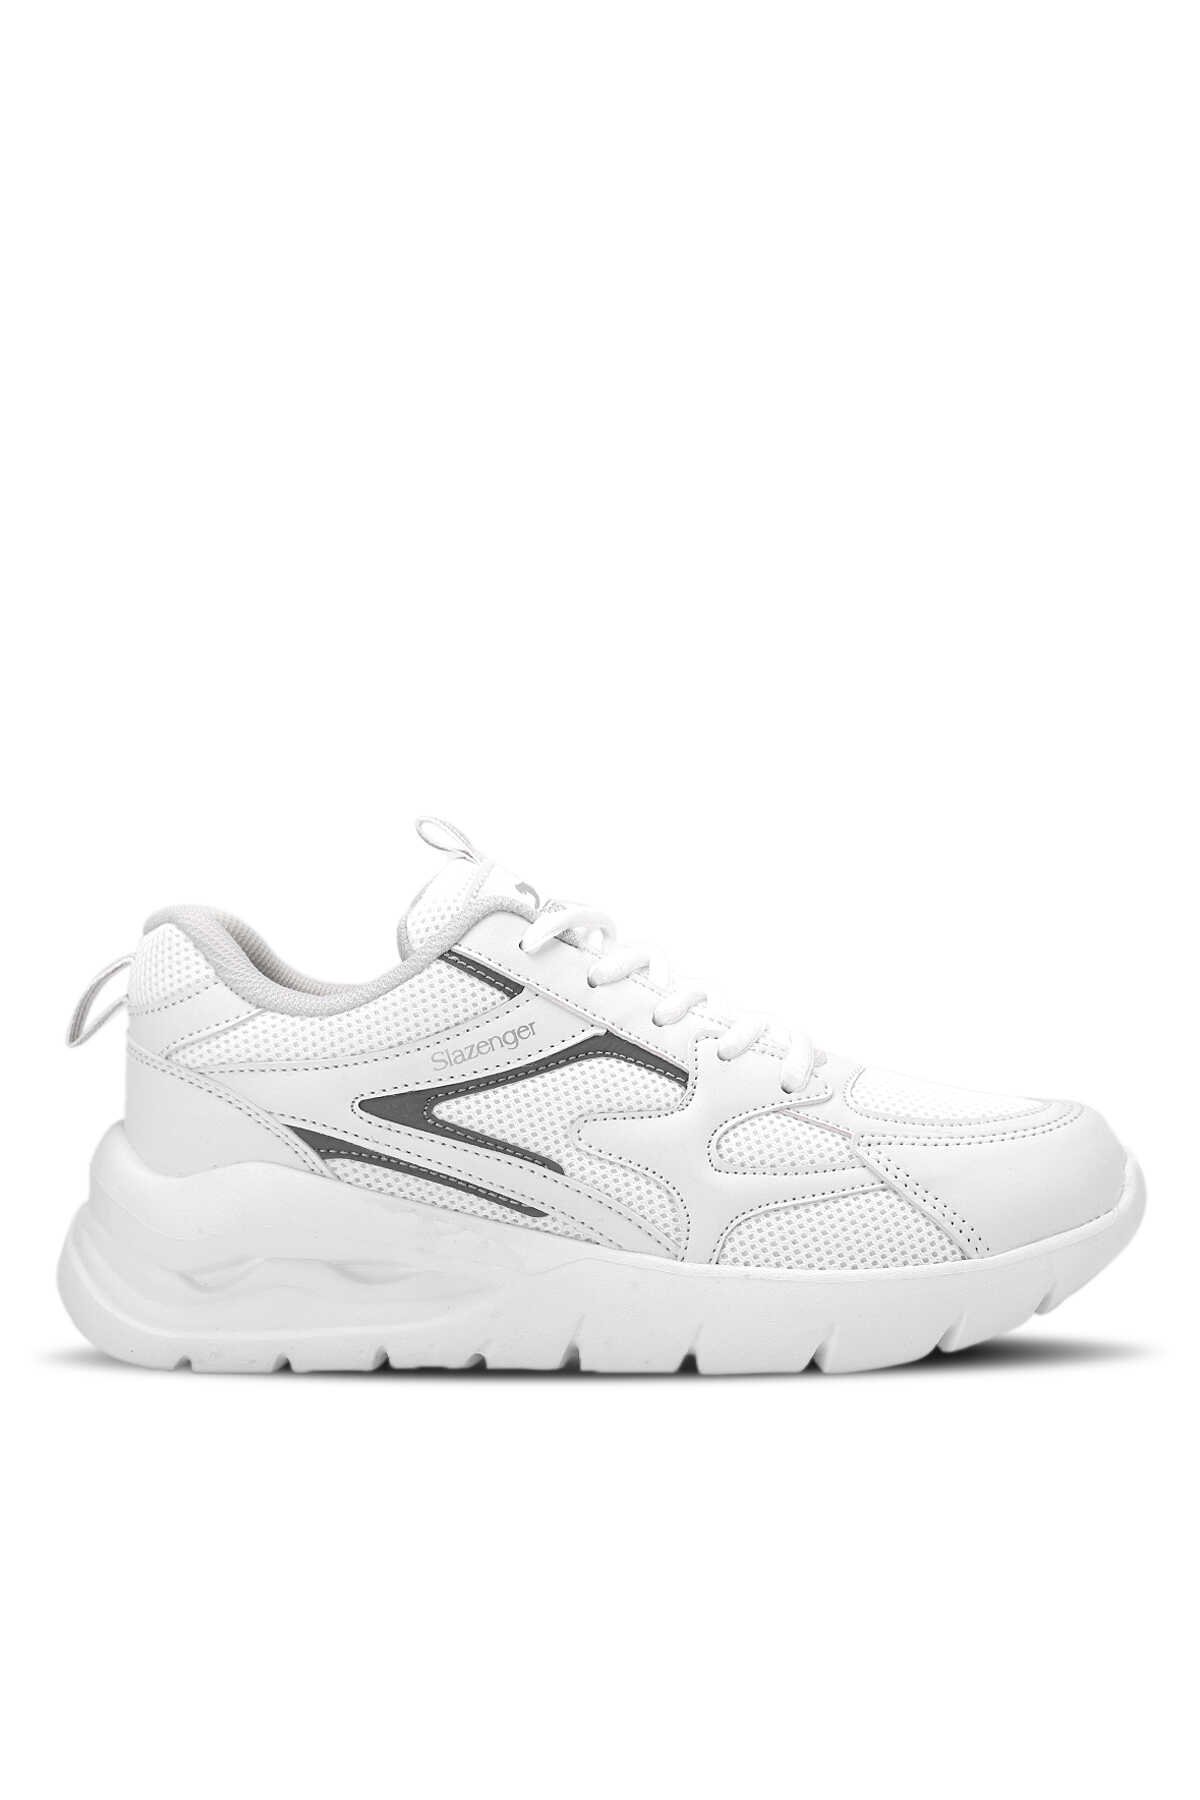 Slazenger - Slazenger BILBO Sneaker Kadın Ayakkabı Beyaz